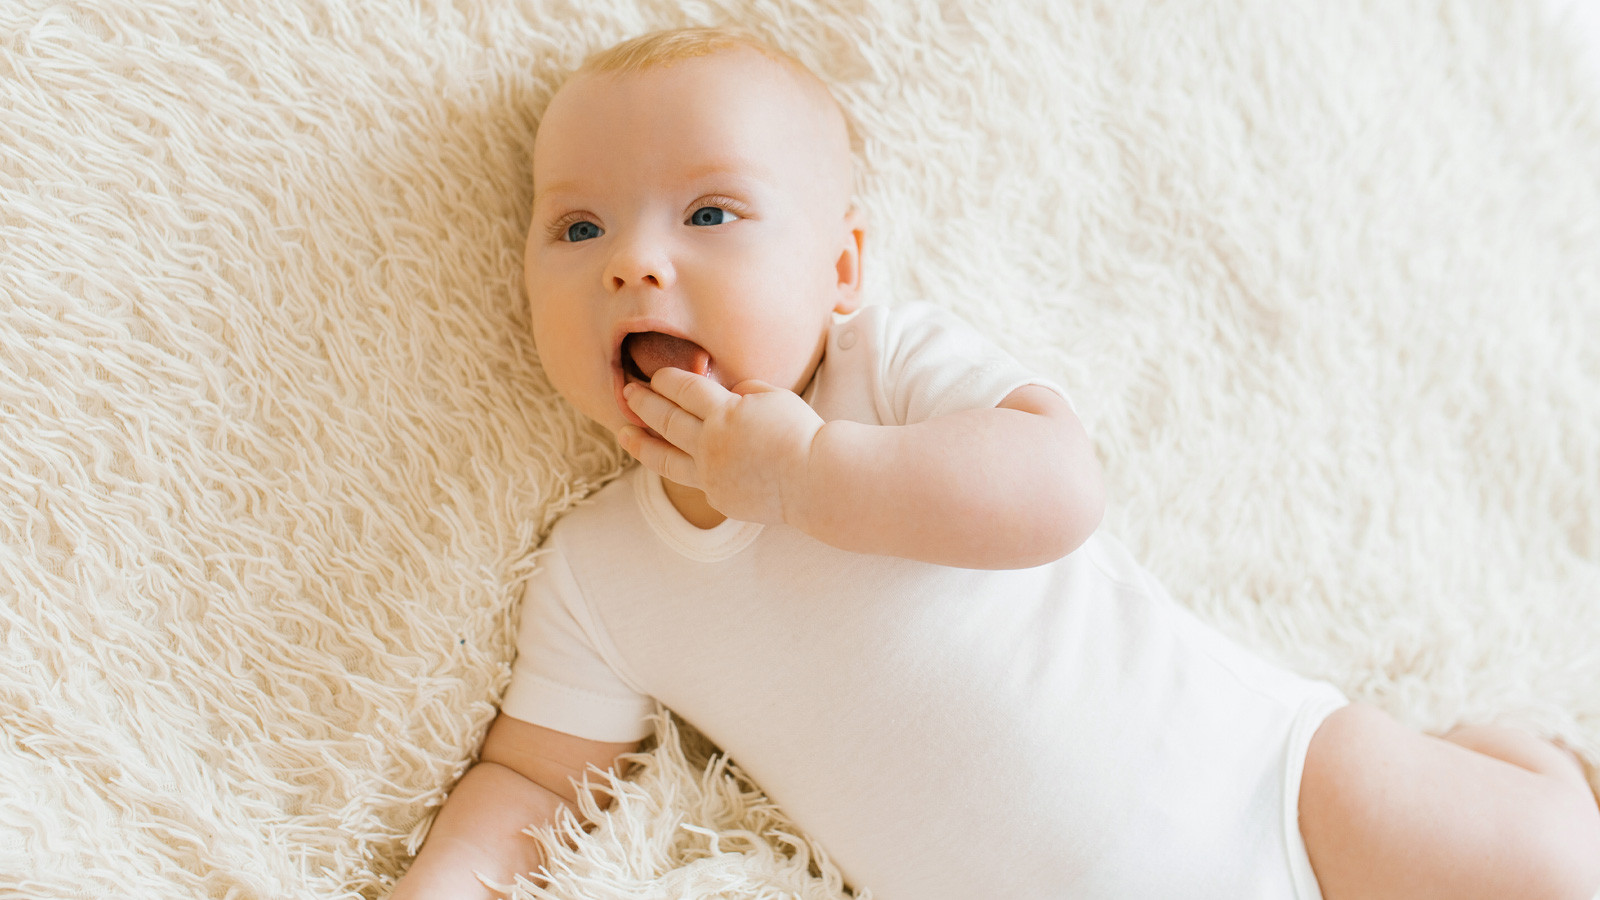 Bebeklerde diş çıkarma belirtileri nelerdir? 6. aydan 3 yaşa kadar devam ediyor!